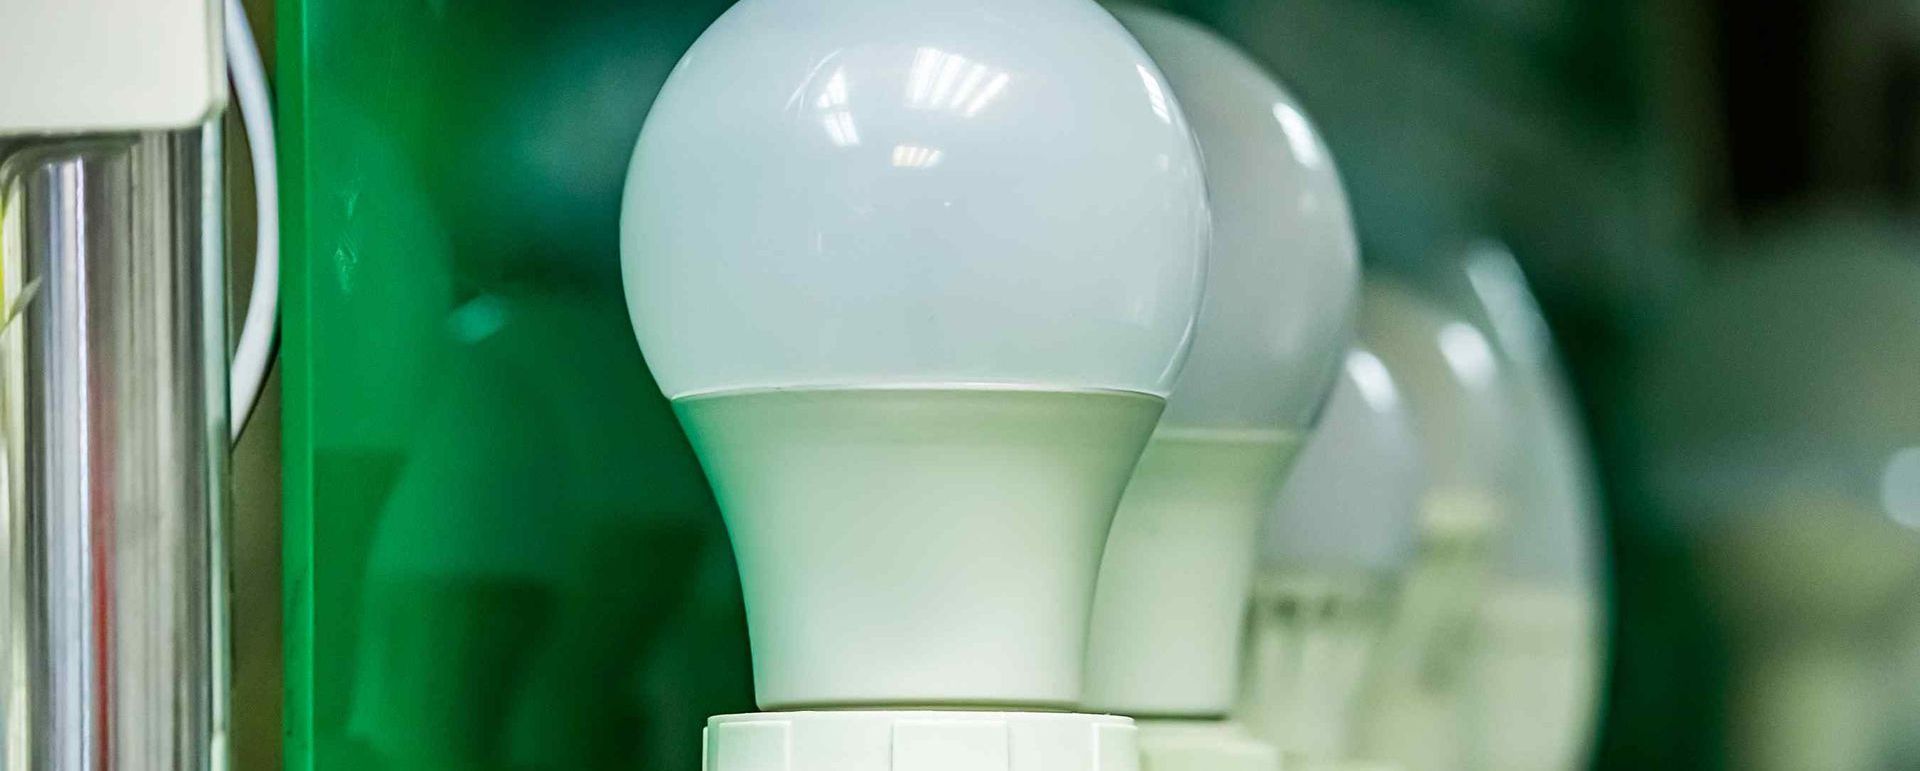 LED Energy Saving Lightbulb